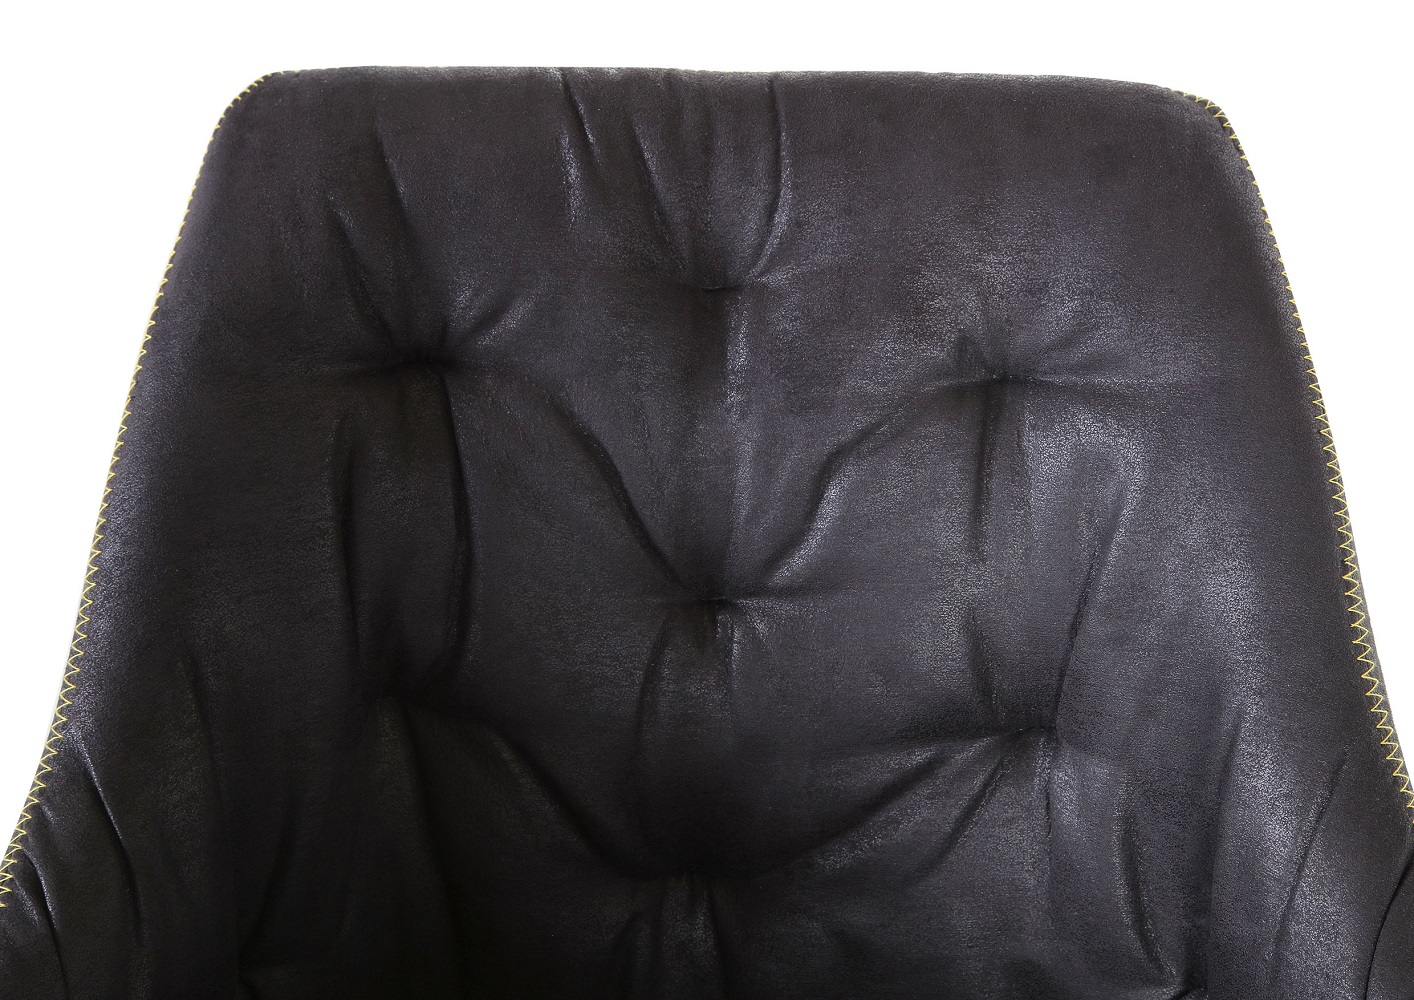 Armlehnenstuhl Floyd 360° drehbar anthrazit Eiche massiv schwarz Esszimmerstuhl Küchenstuhl Sessel Armlehne